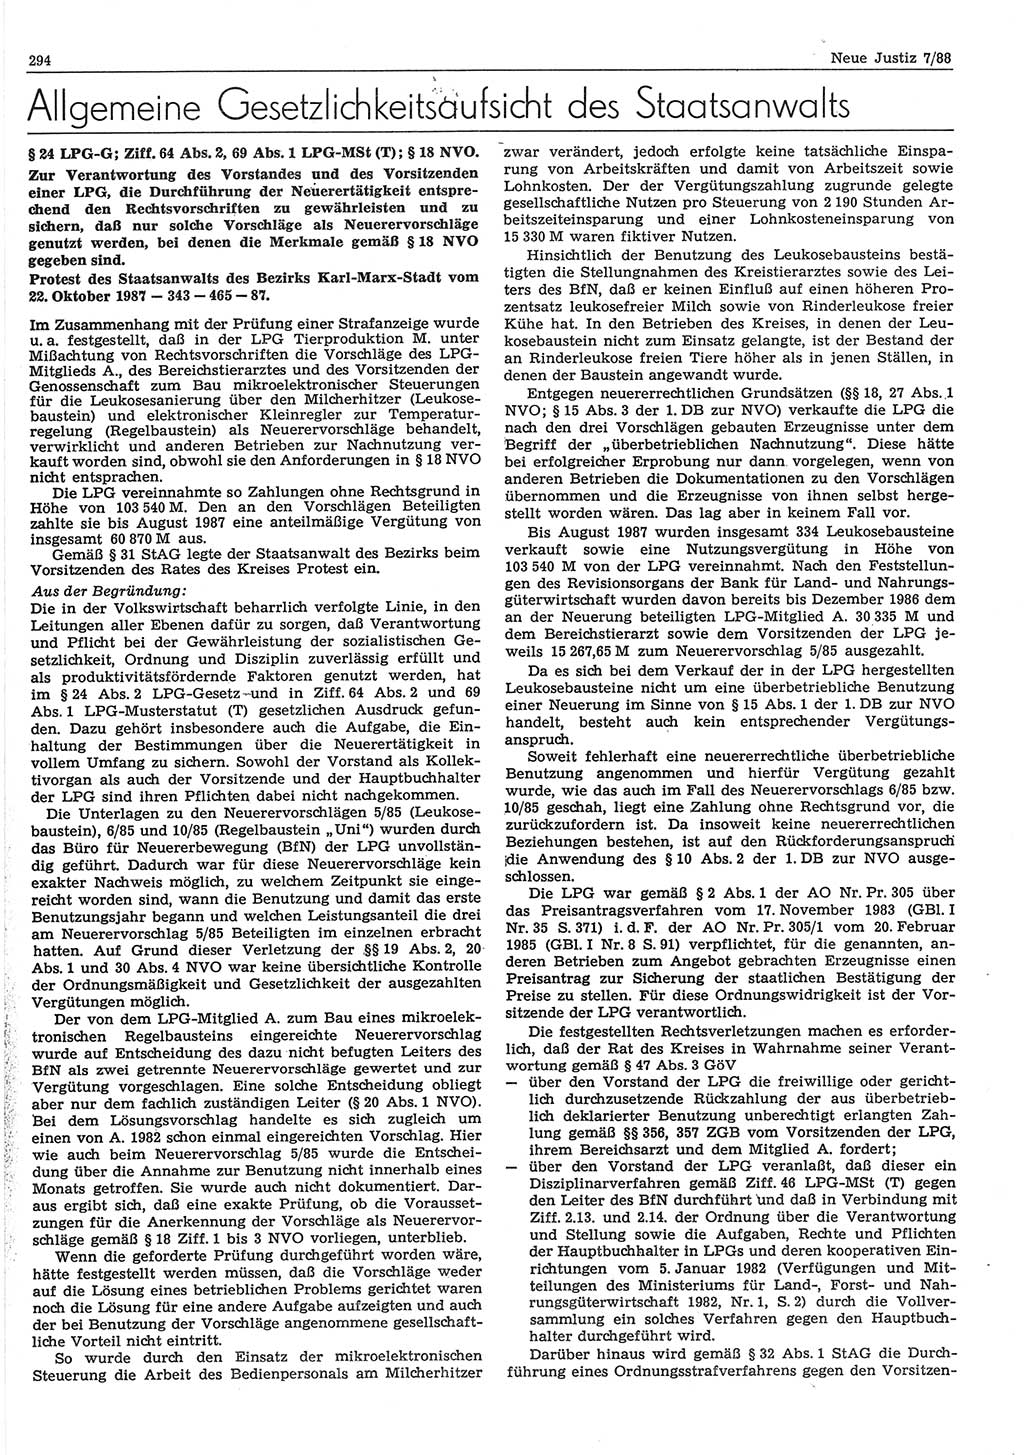 Neue Justiz (NJ), Zeitschrift für sozialistisches Recht und Gesetzlichkeit [Deutsche Demokratische Republik (DDR)], 42. Jahrgang 1988, Seite 294 (NJ DDR 1988, S. 294)